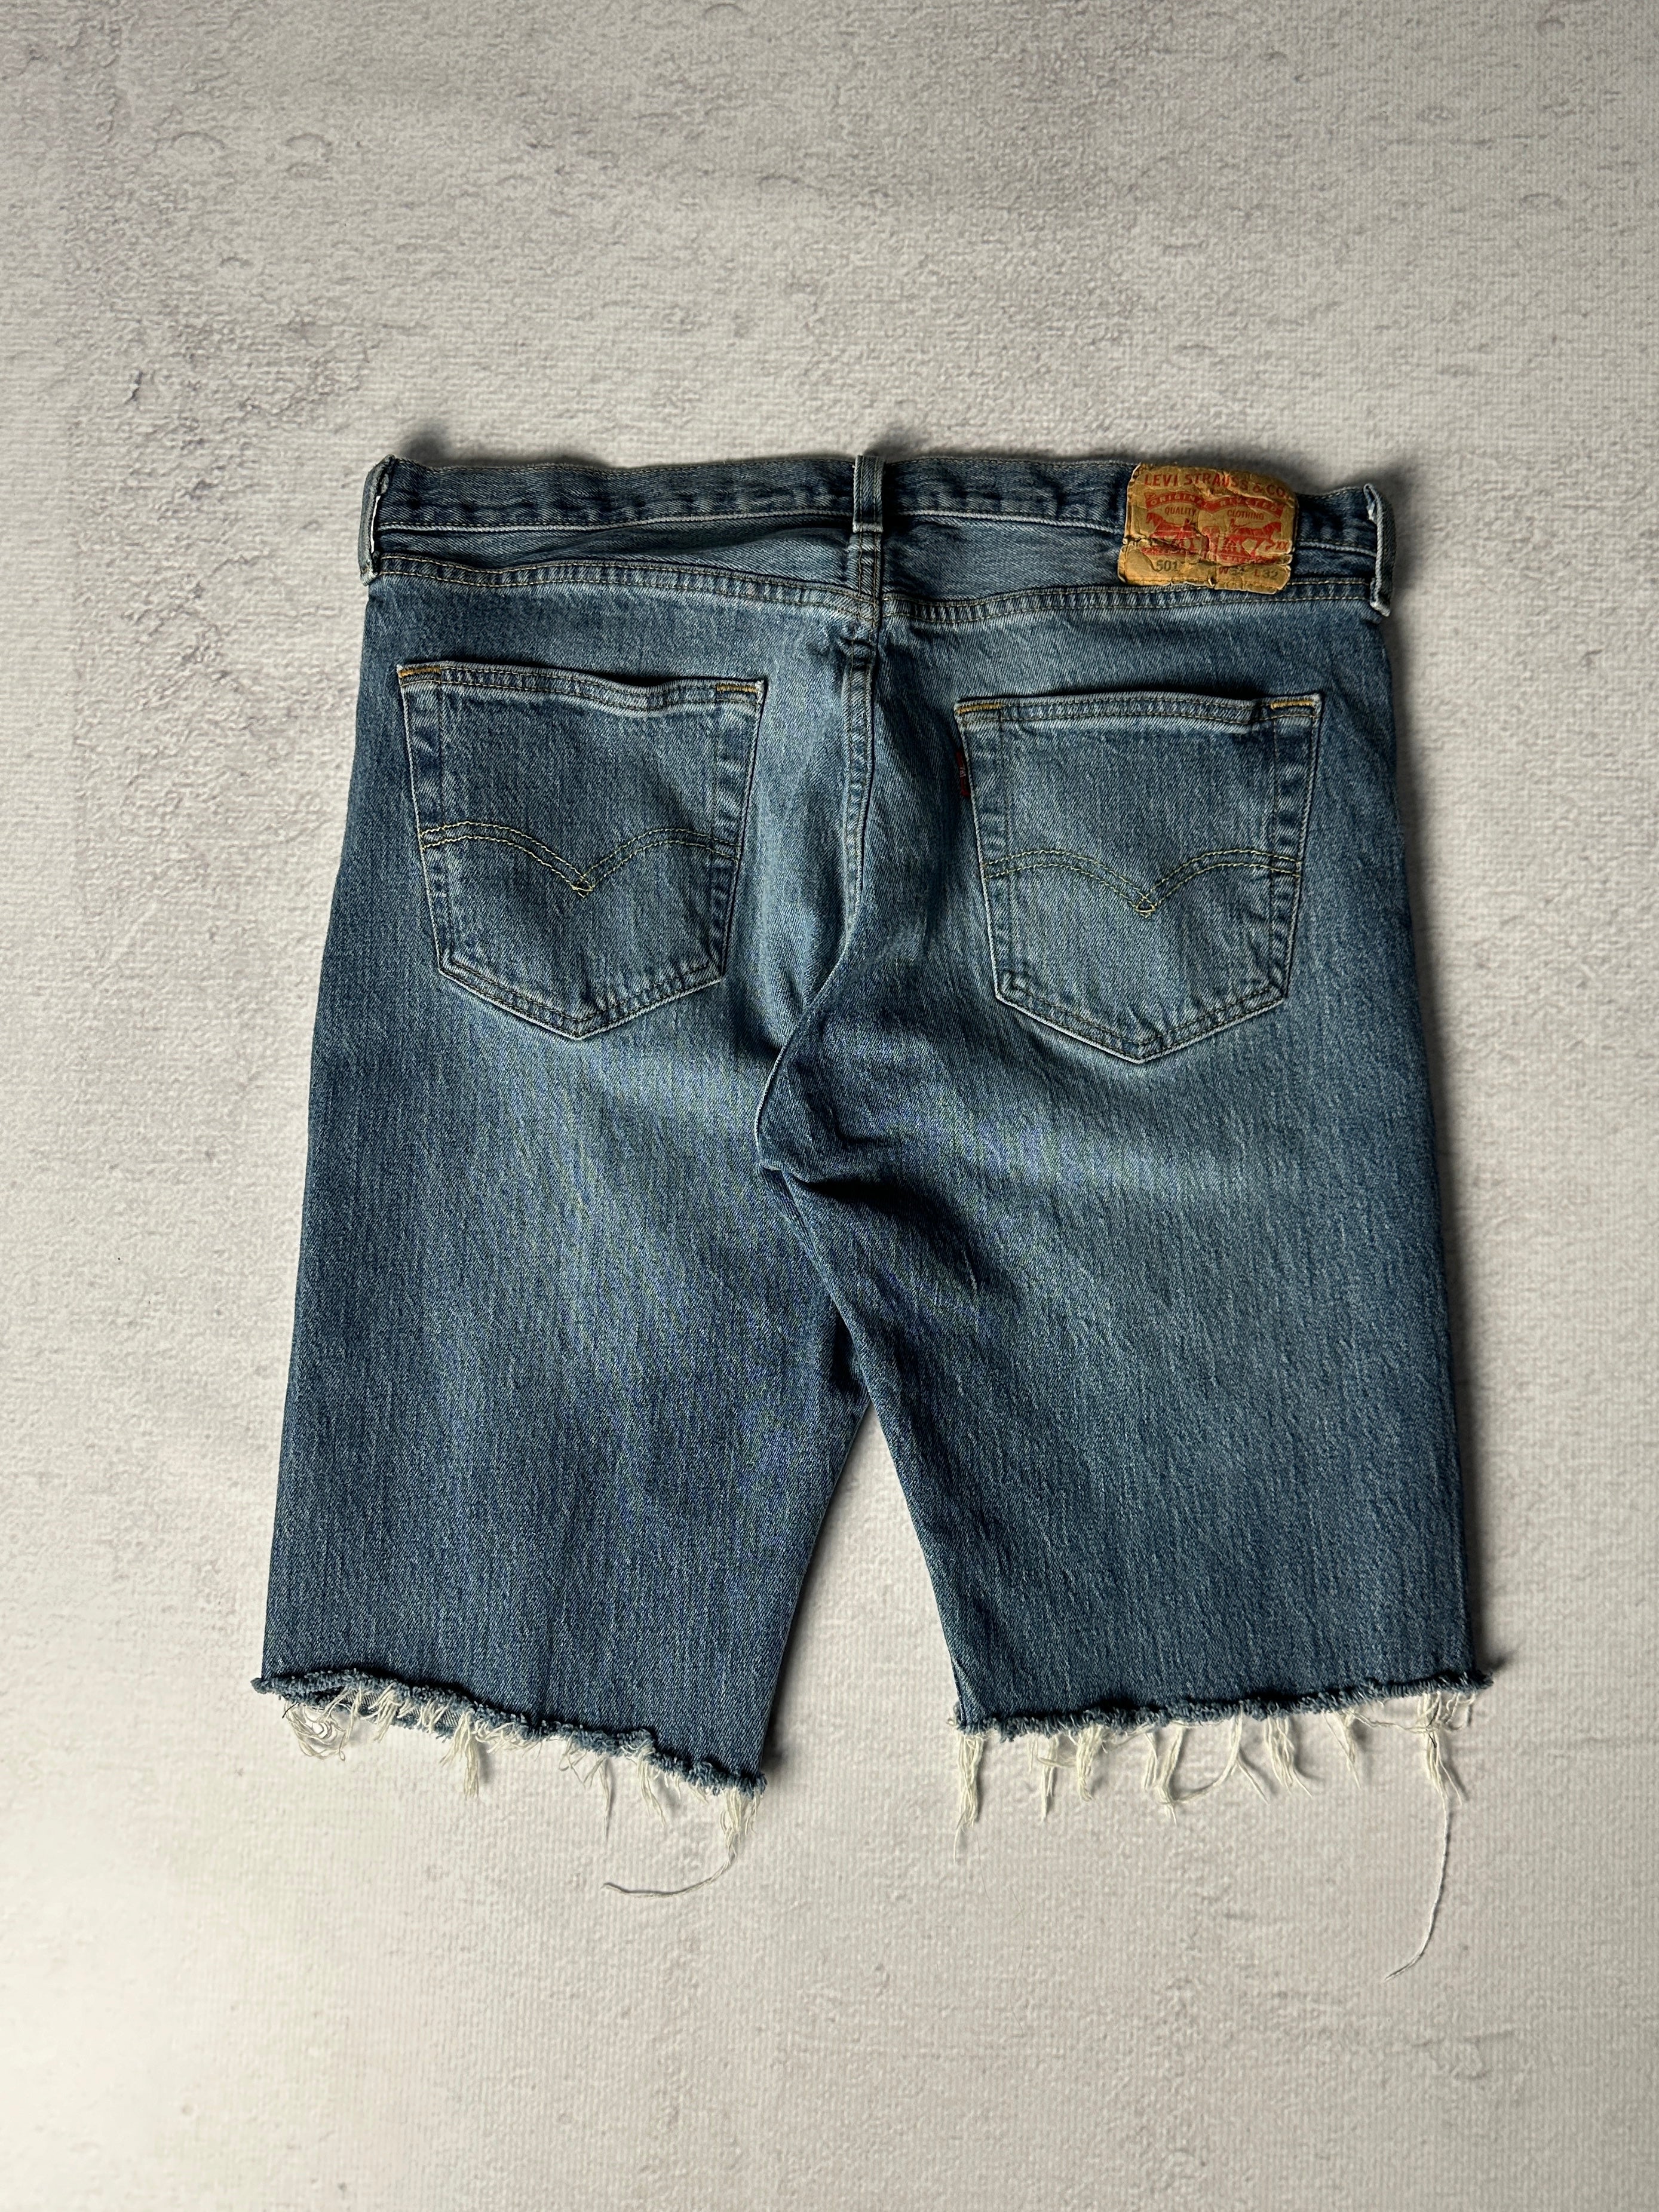 Vintage Levis Jean Shorts - Men's 36W12L